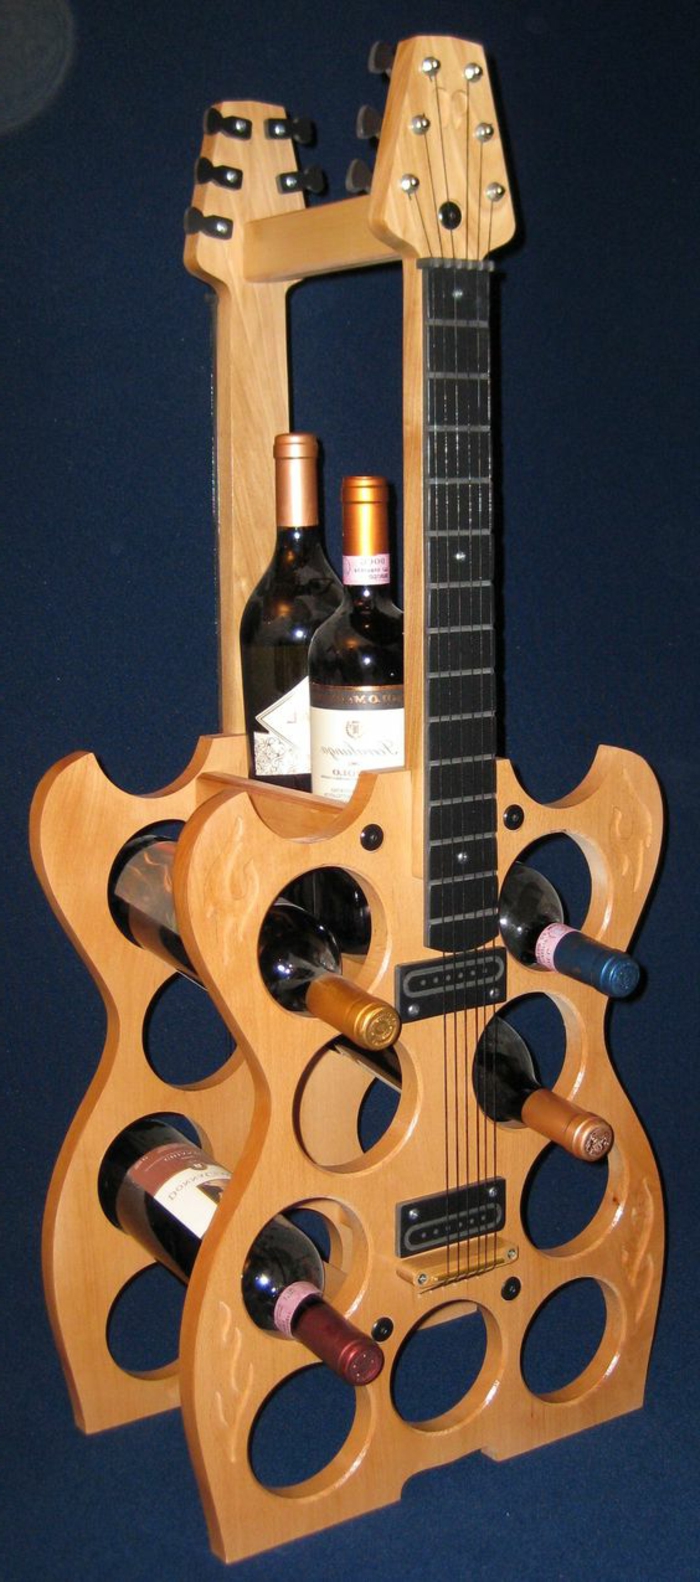 מתלה יין לקיר או לחדר כקישוט כדי לבנות מחדש את הגיטרות הישנות ולהפוך את הקבינט מתוך זה